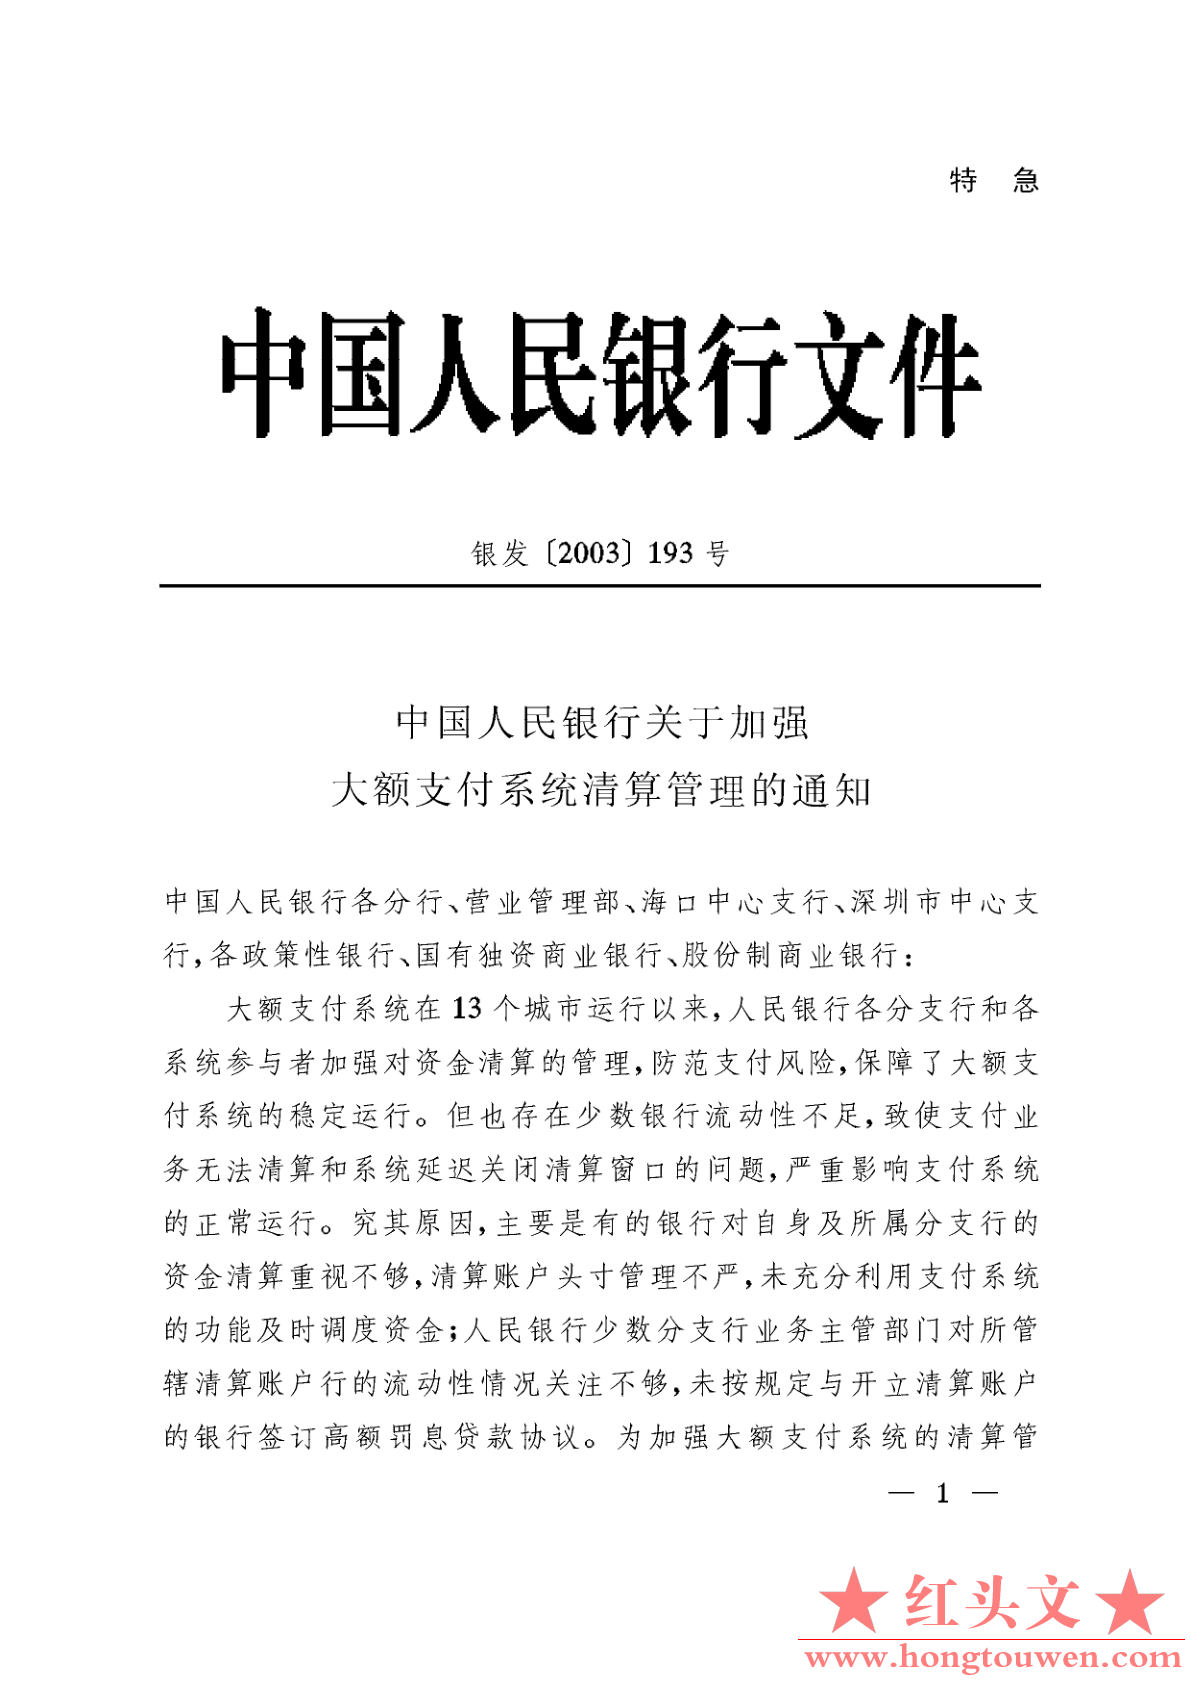 银发[2003]193号-中国人民银行关于加强大额支付系统清算管理的通知_1.png